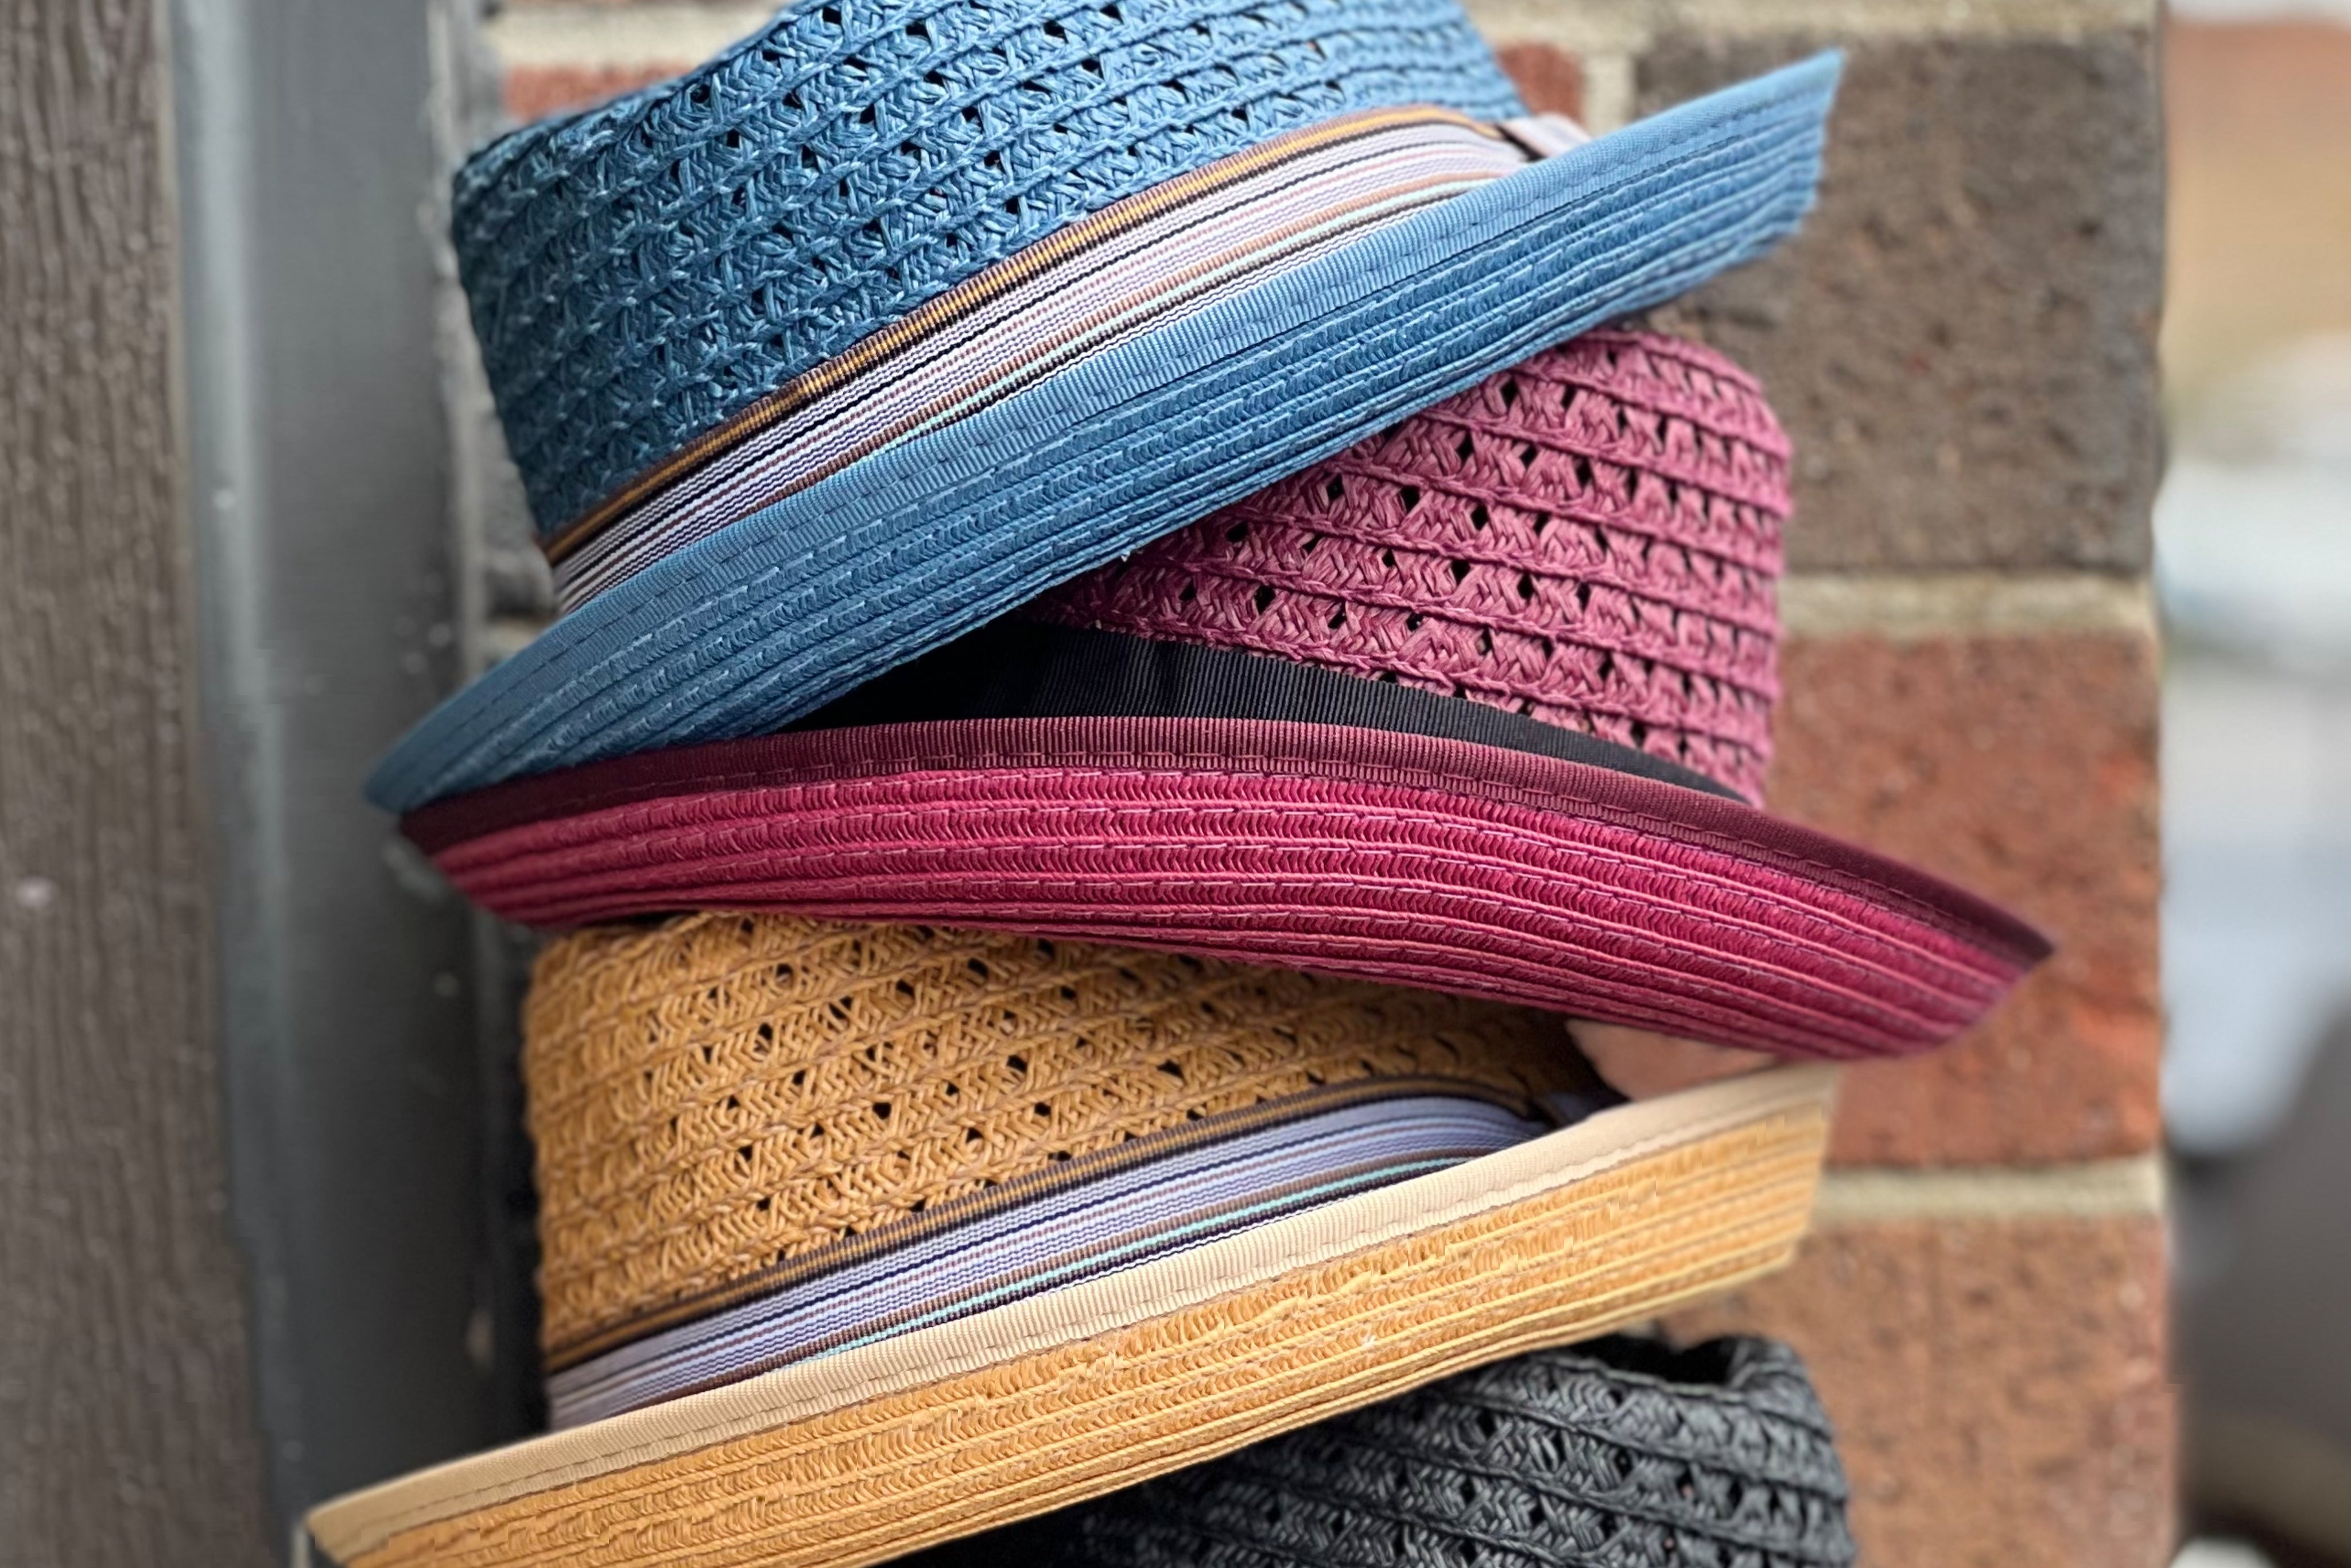 Handmade Hats for Men and Women – Hats in the Belfry